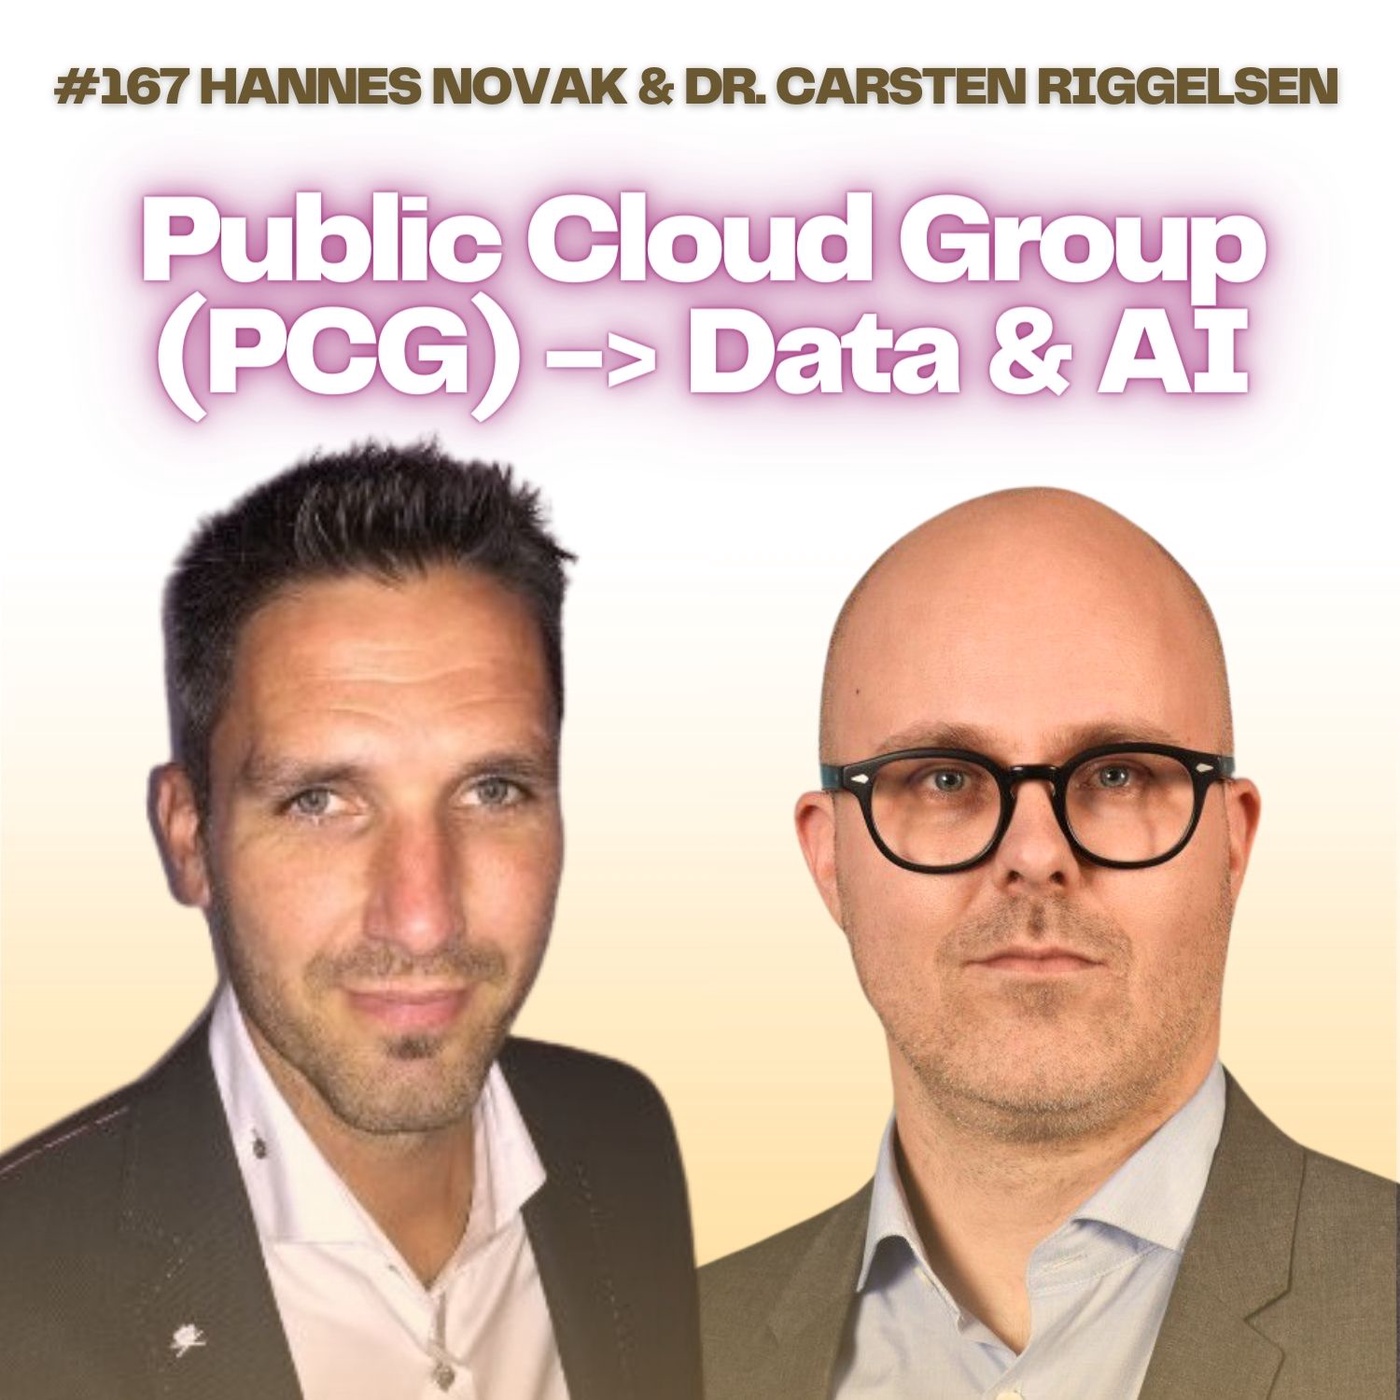 #167 Die Public Cloud Group (PCG) baut auf in Data & AI mit Hannes Novak und Dr. Carsten Riggelsen